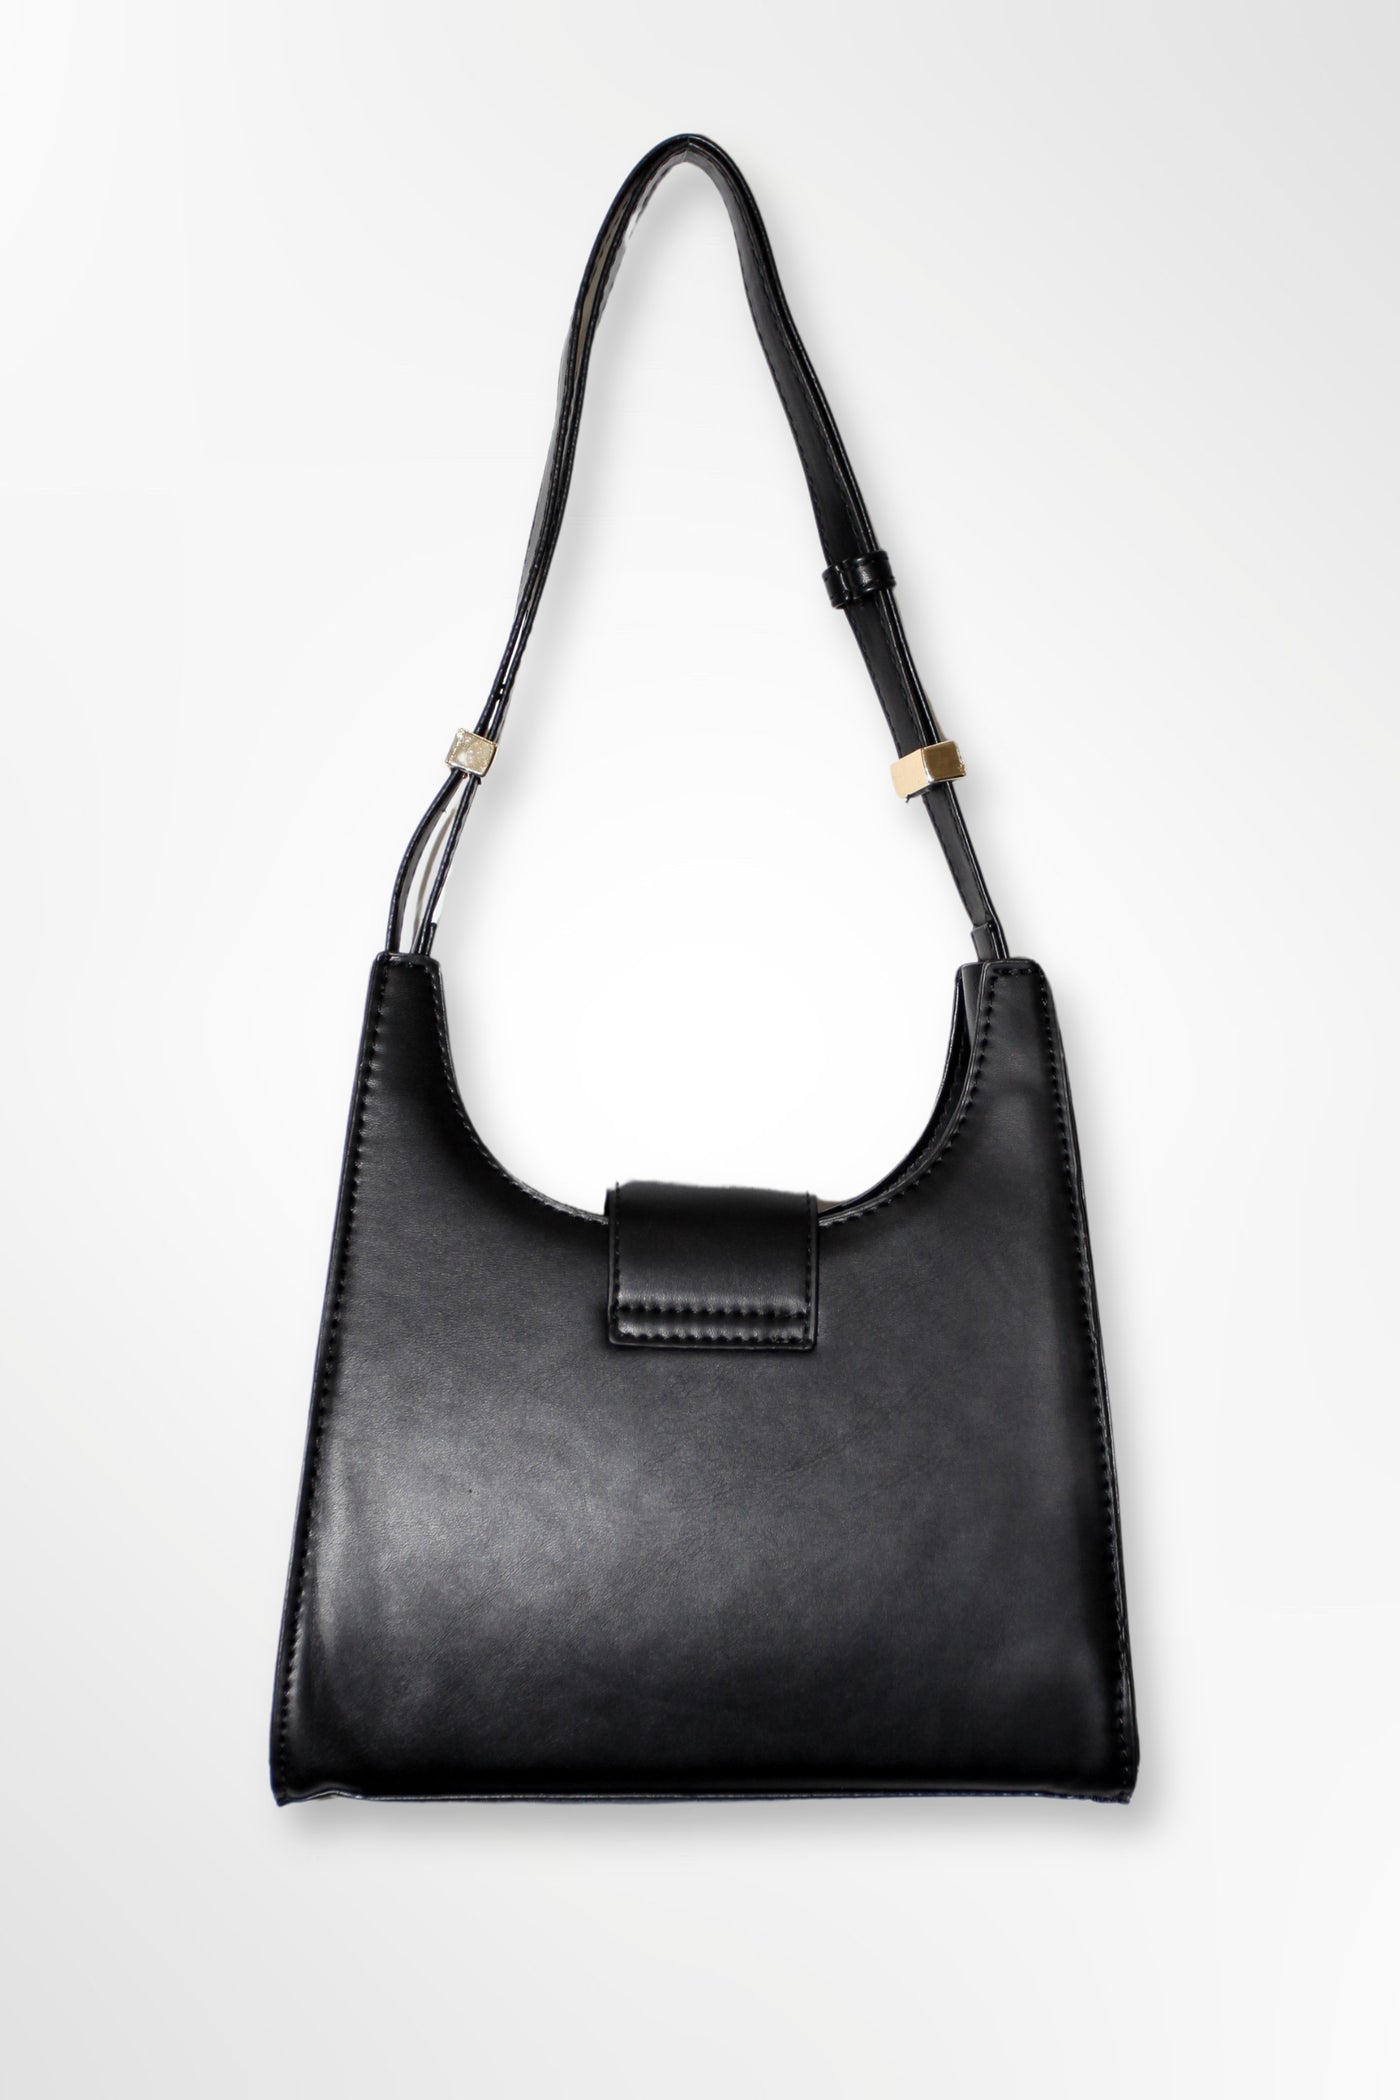 Vegan Leather Black Floral Hand Bag